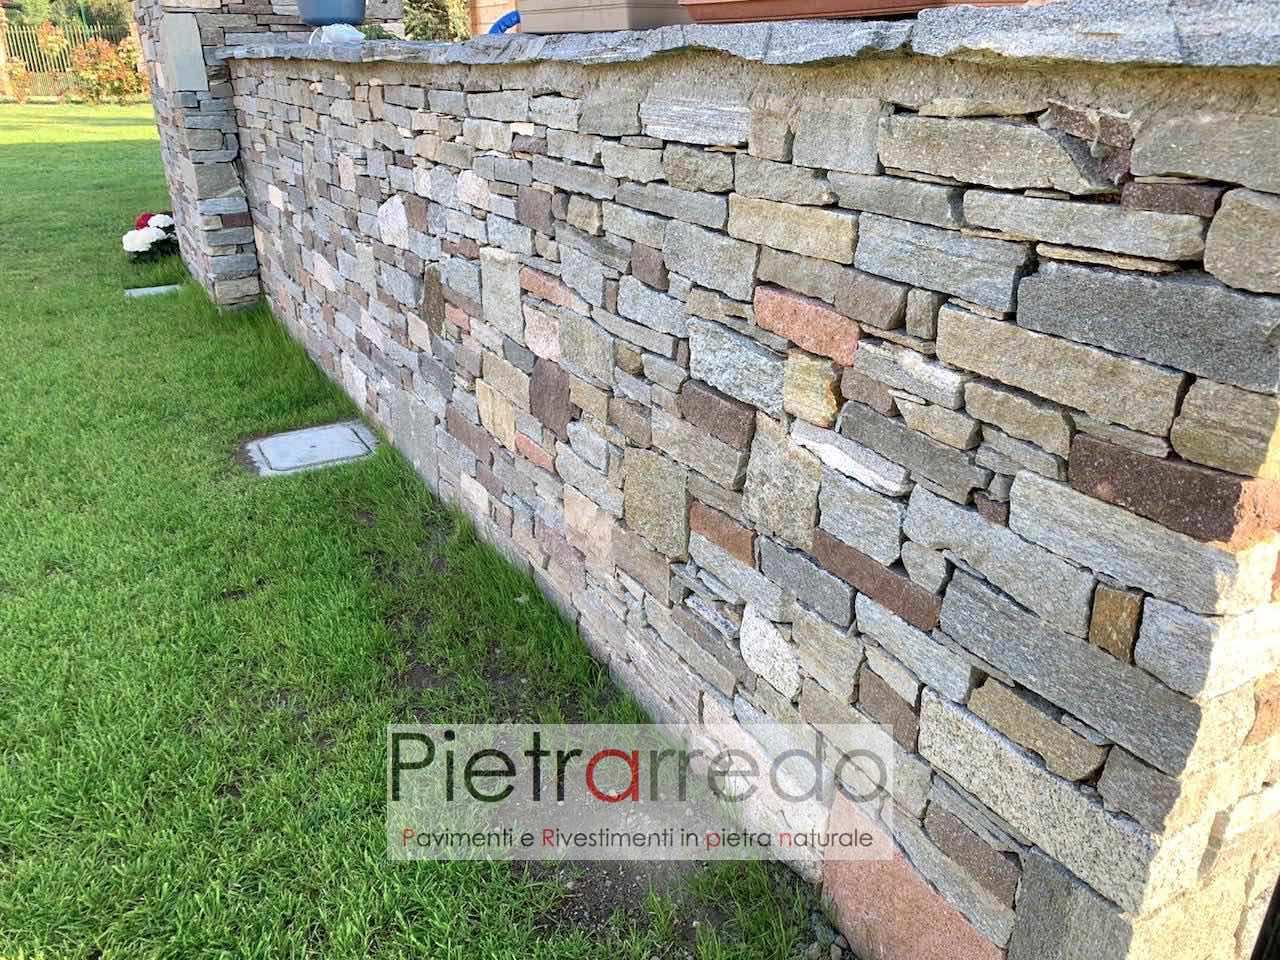 offerta e prezzo muro a secco in pietra con masselli binderi offerta e prezzo costi pietrarredo milano